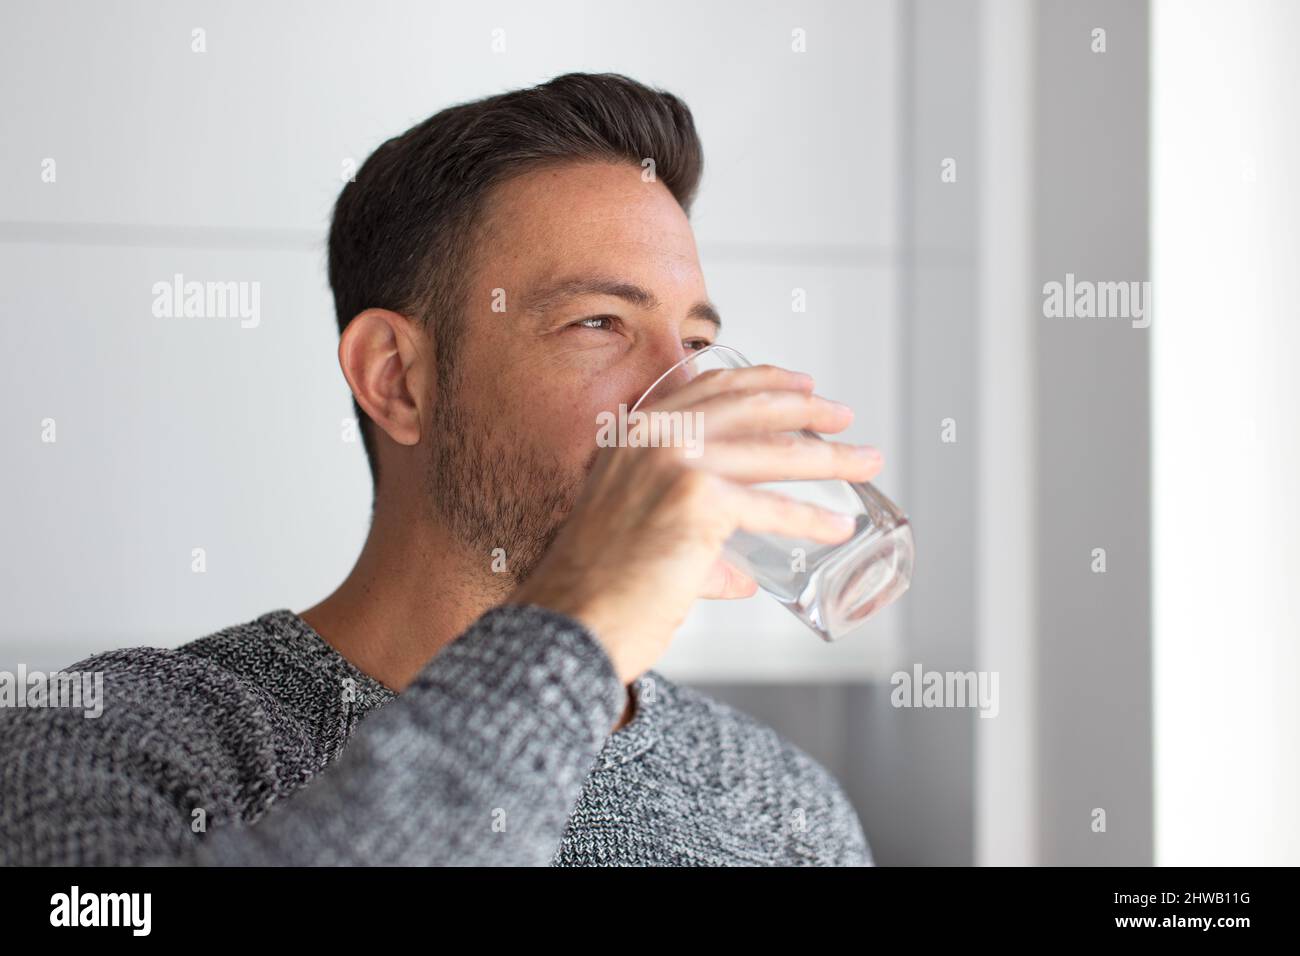 L'homme boit de l'eau depuis le verre à l'intérieur, en regardant loin Banque D'Images